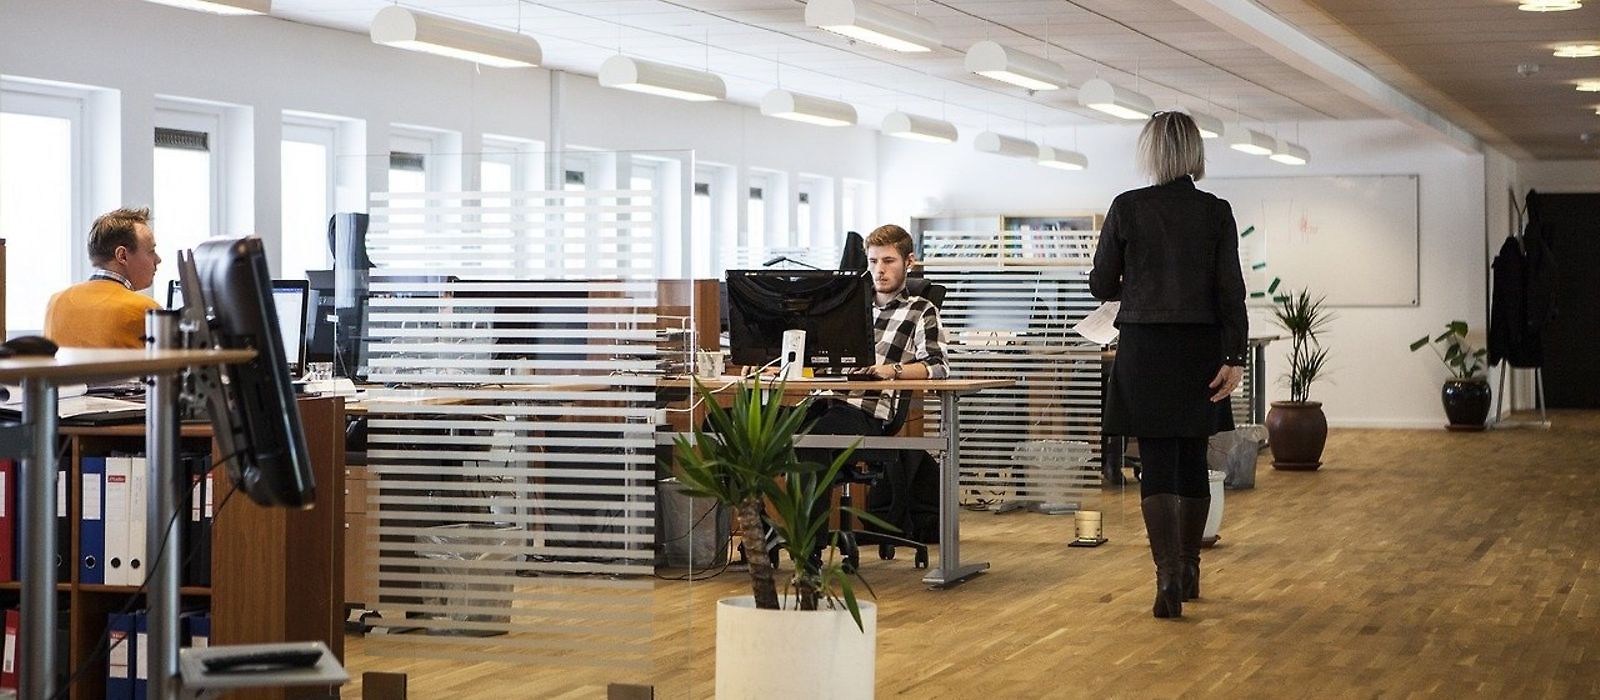 Großraumbüro - zwei Männer am Arbeitplatz - eine Frau geht durch den Raum